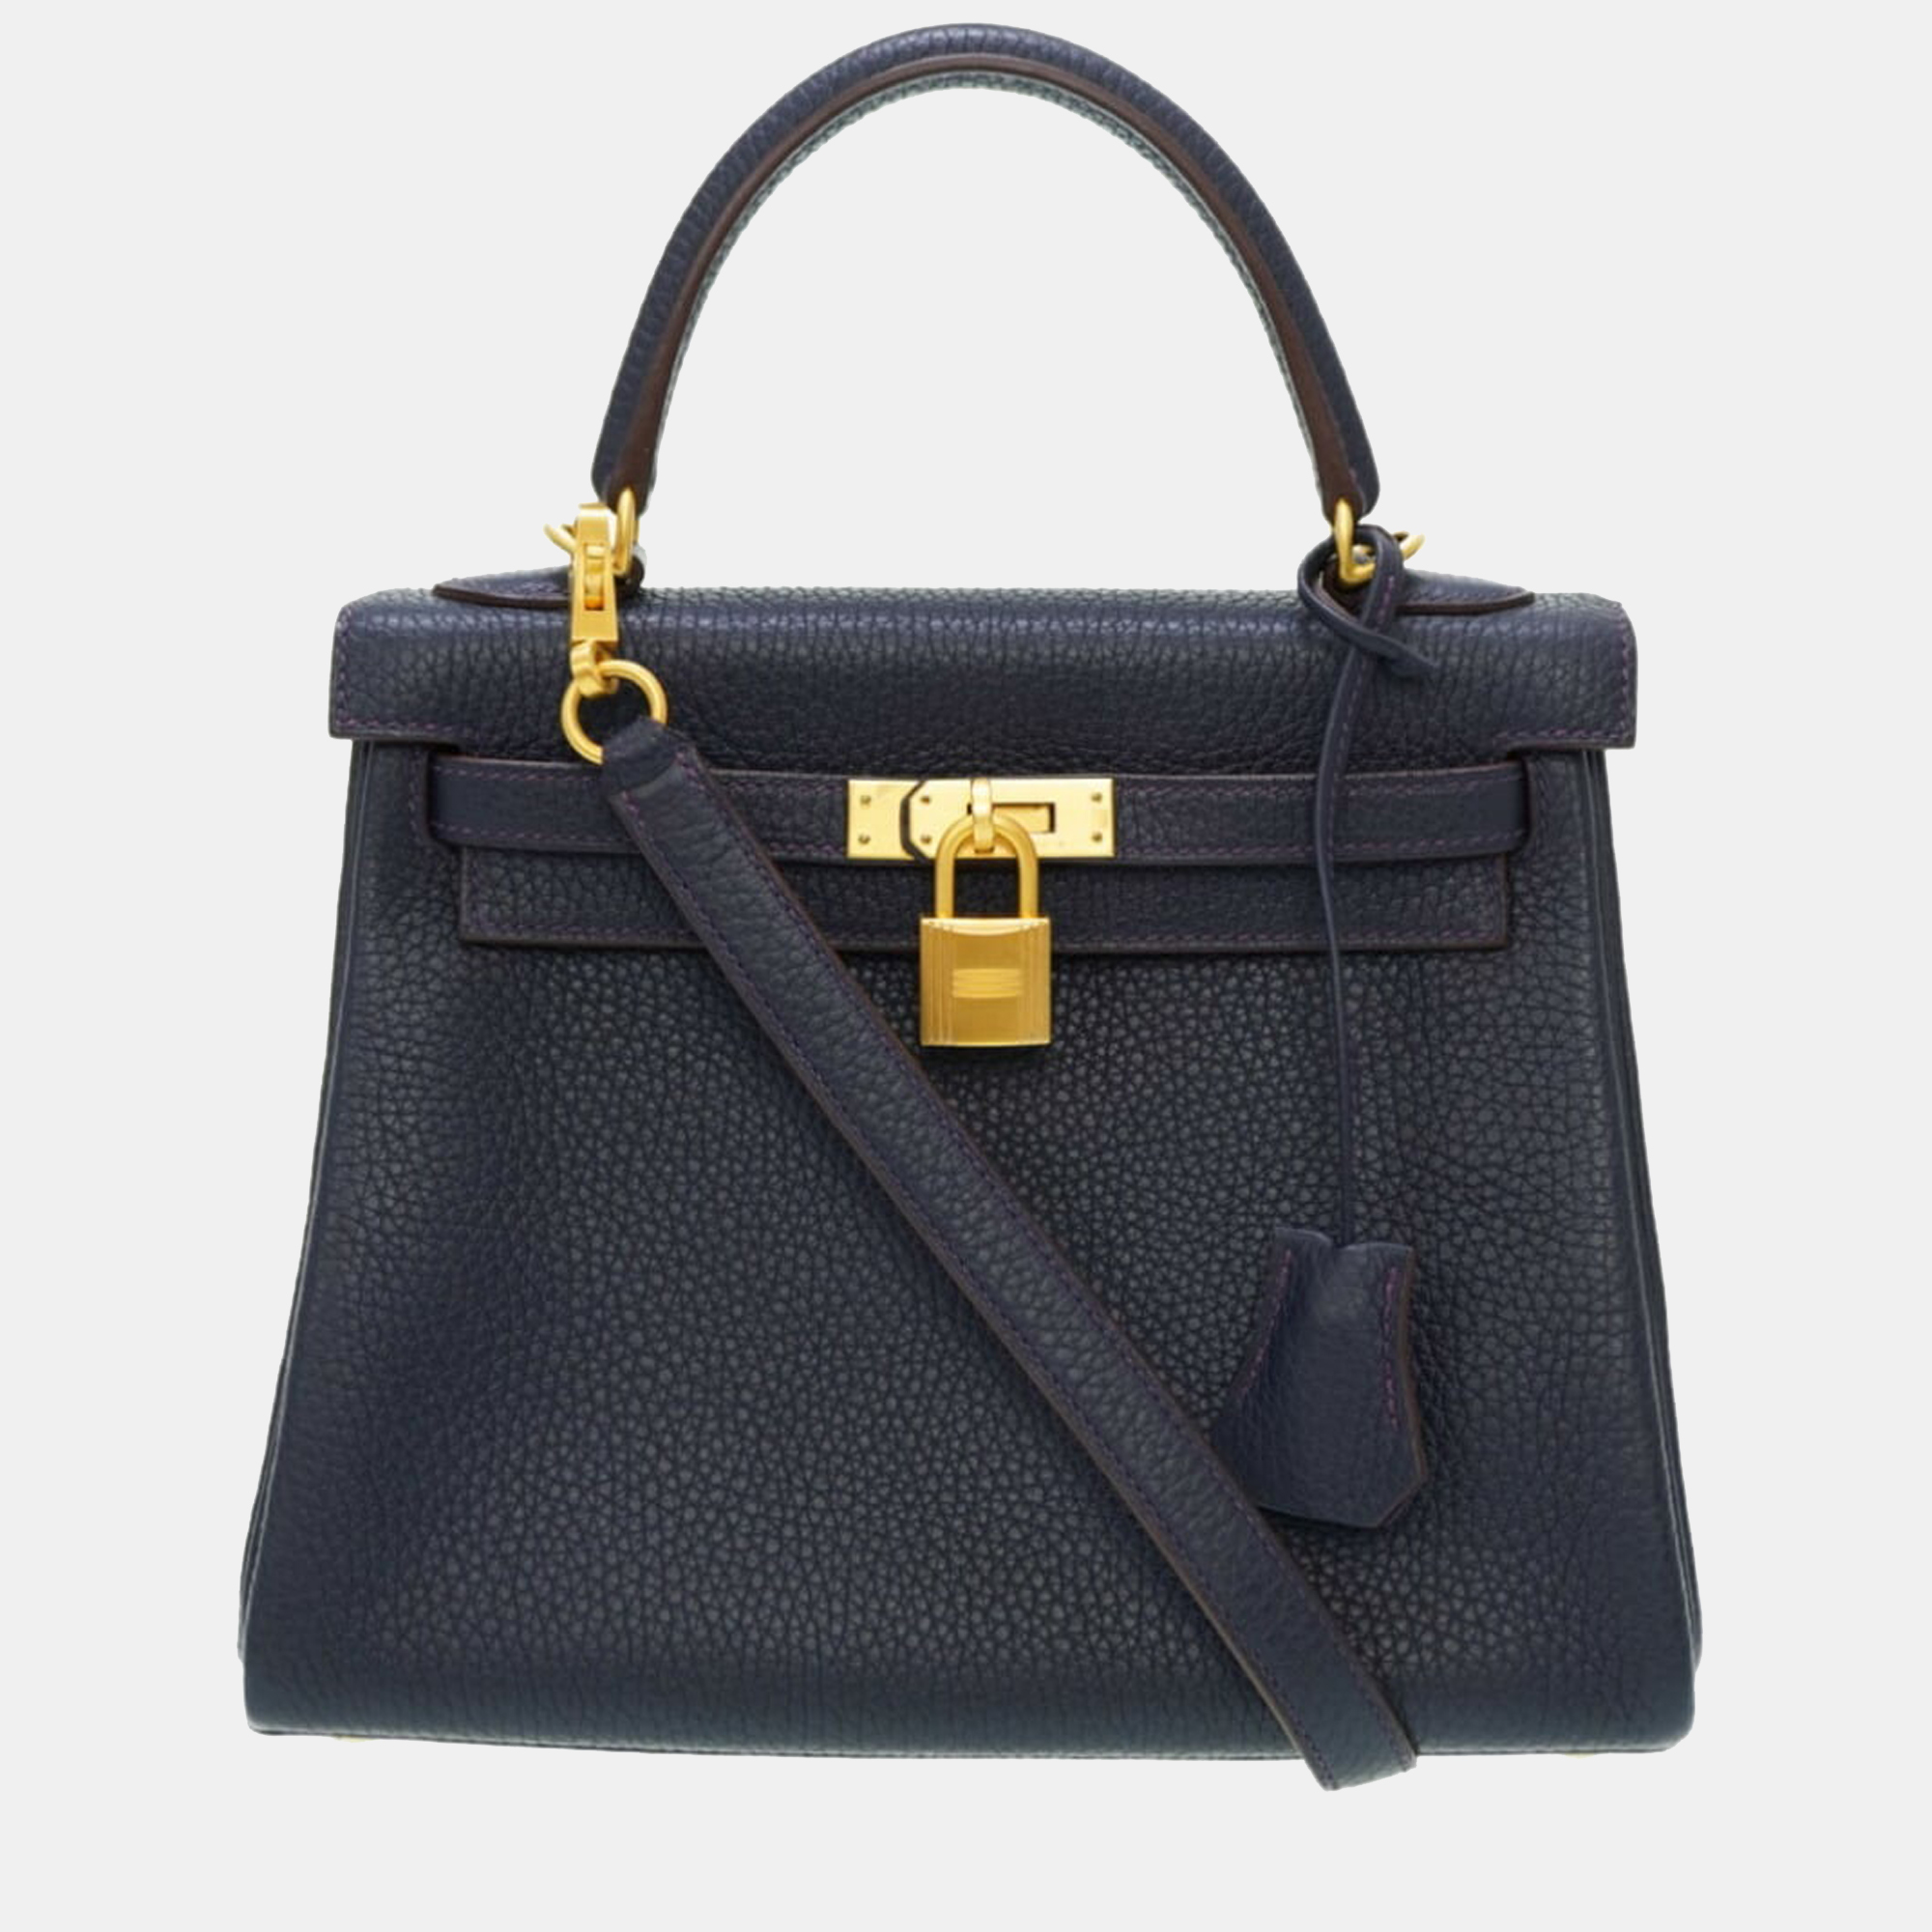 Hermes Kelly 25 Togo Bleu Nuit D Engraved Personal Order Matte Special Handbag with Shoulder Strap